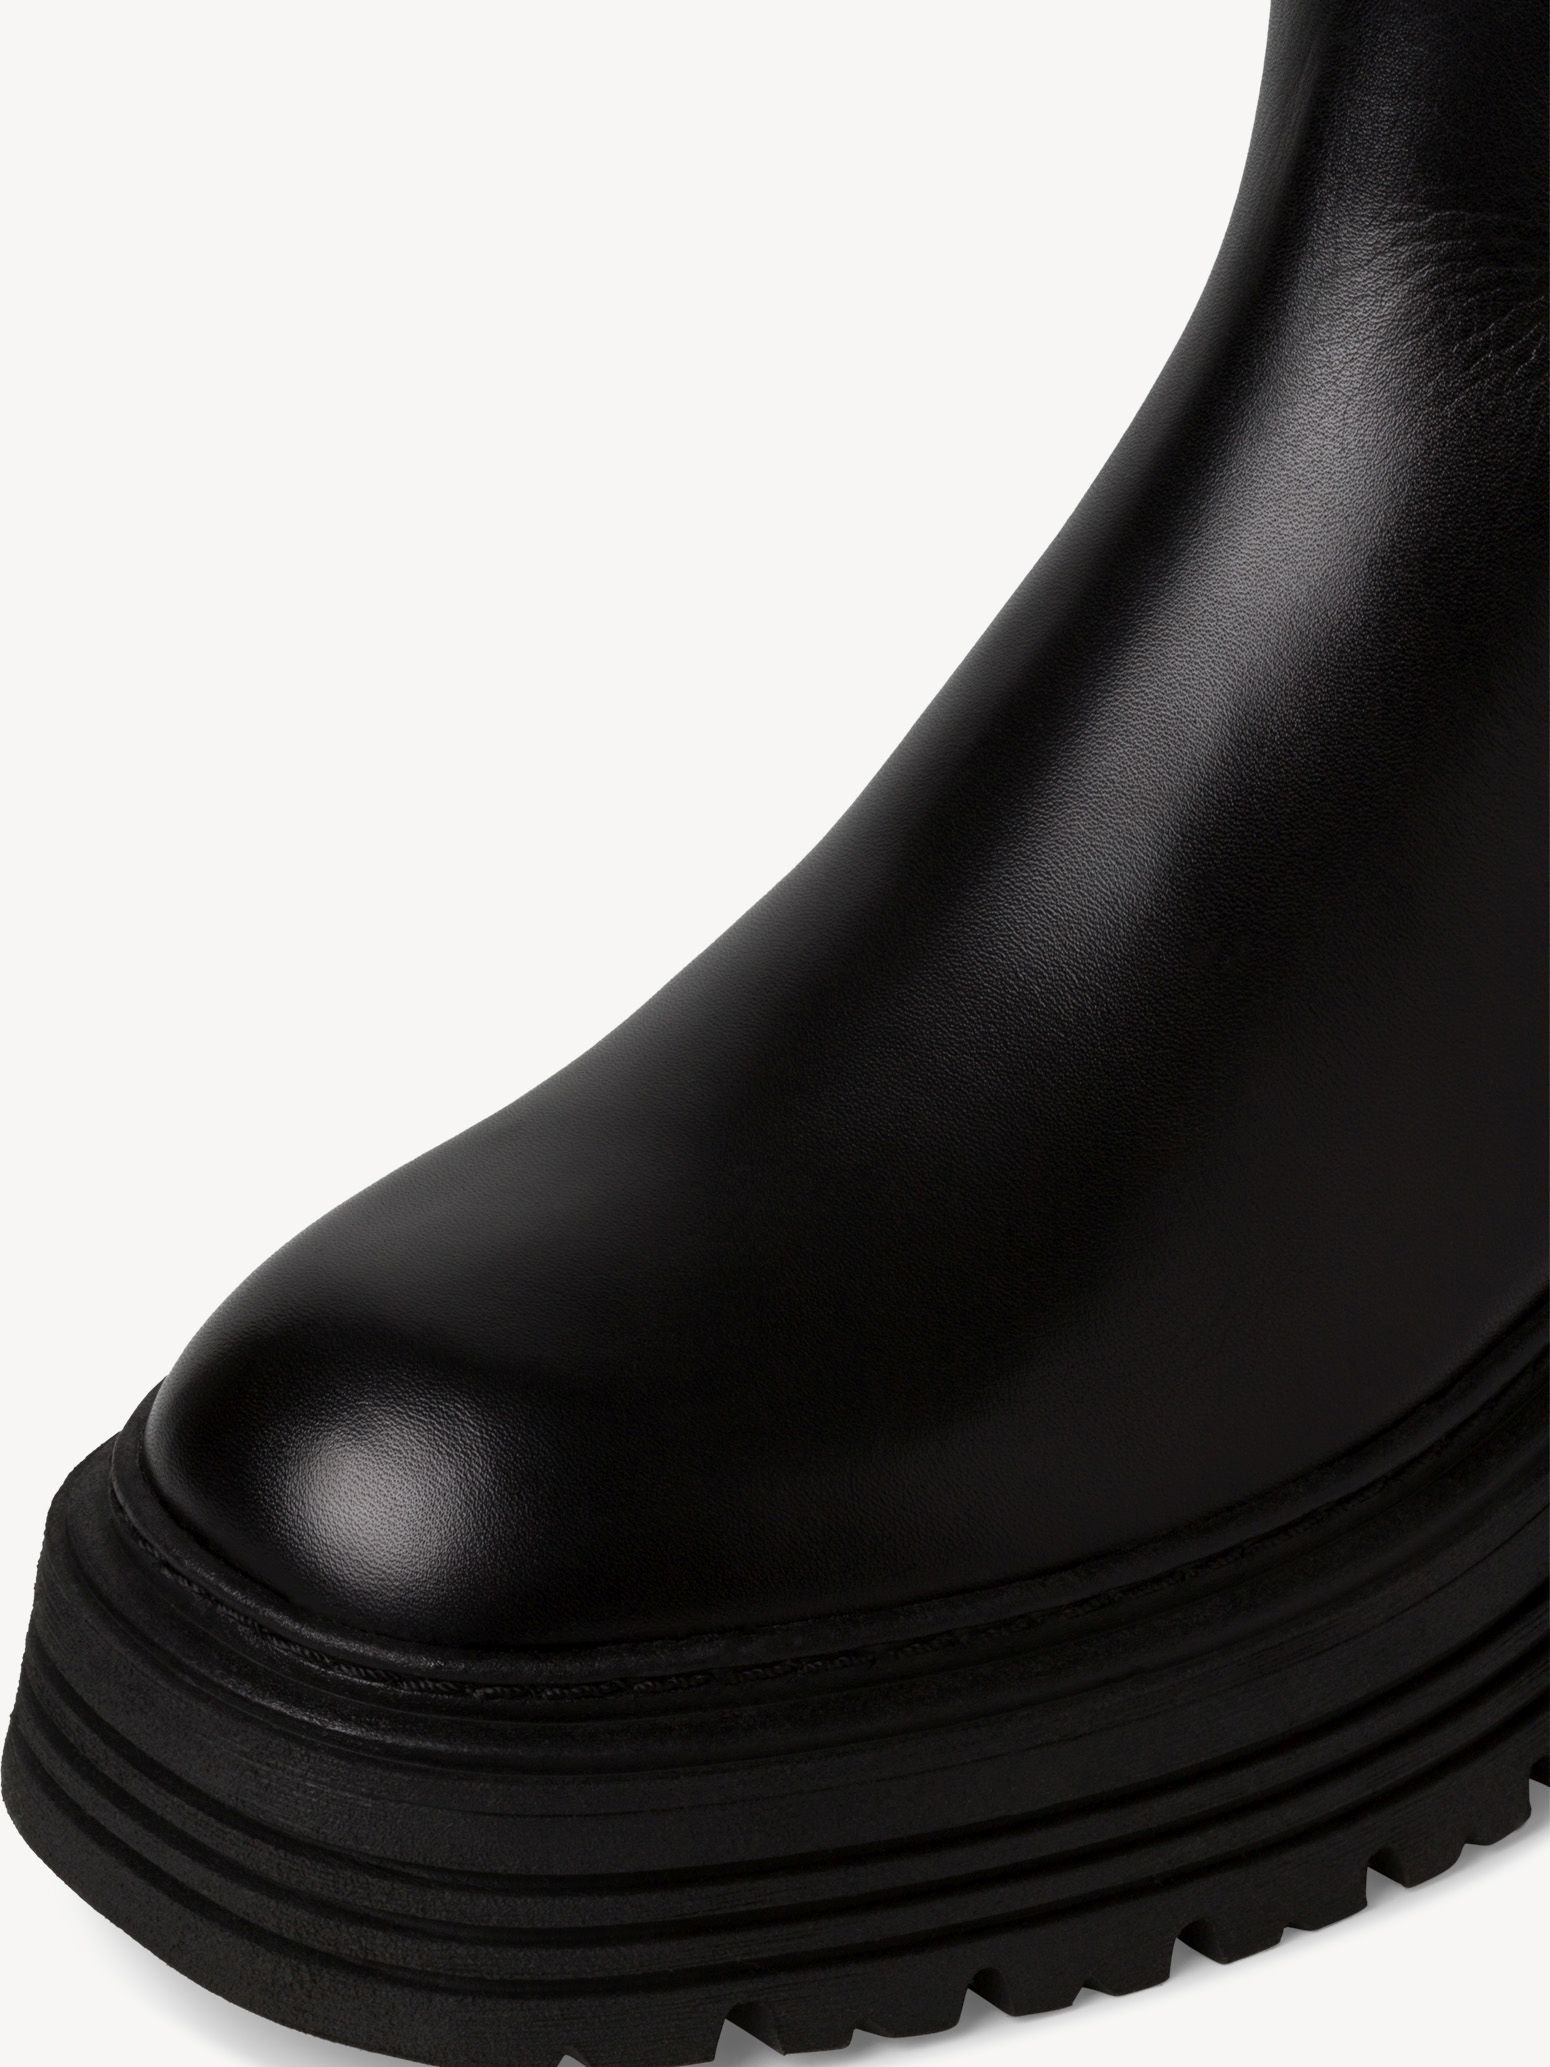 Boots - black, BLACK, hi-res